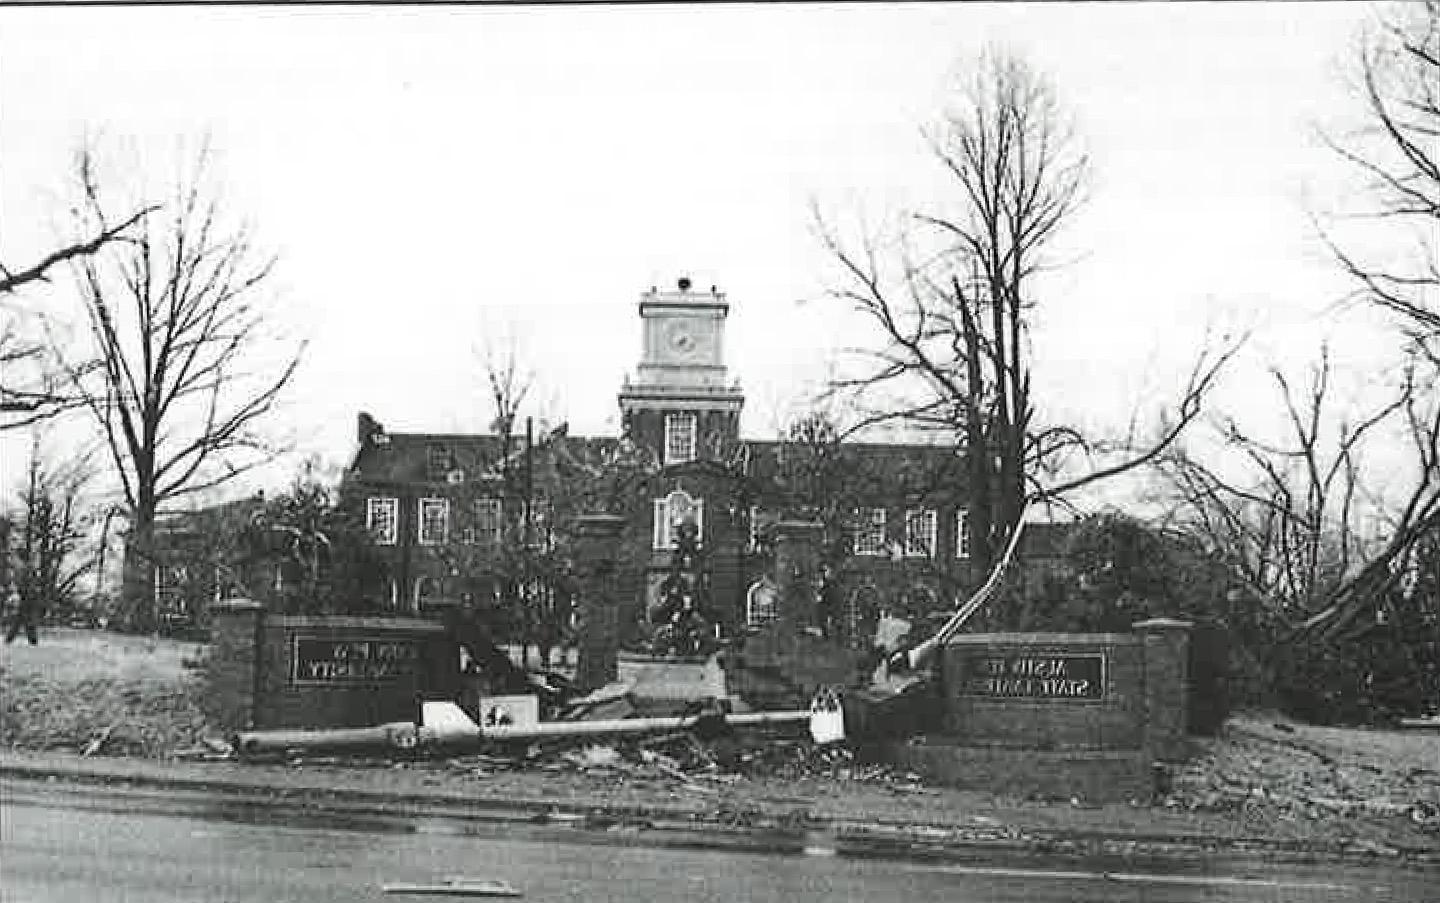 的褐变, 如图所示, 克莱门特, Harned, Harvill and Archwood buildings were badly damaged during a Jan. 22, 1999, tornado that ripped through Clarksville.